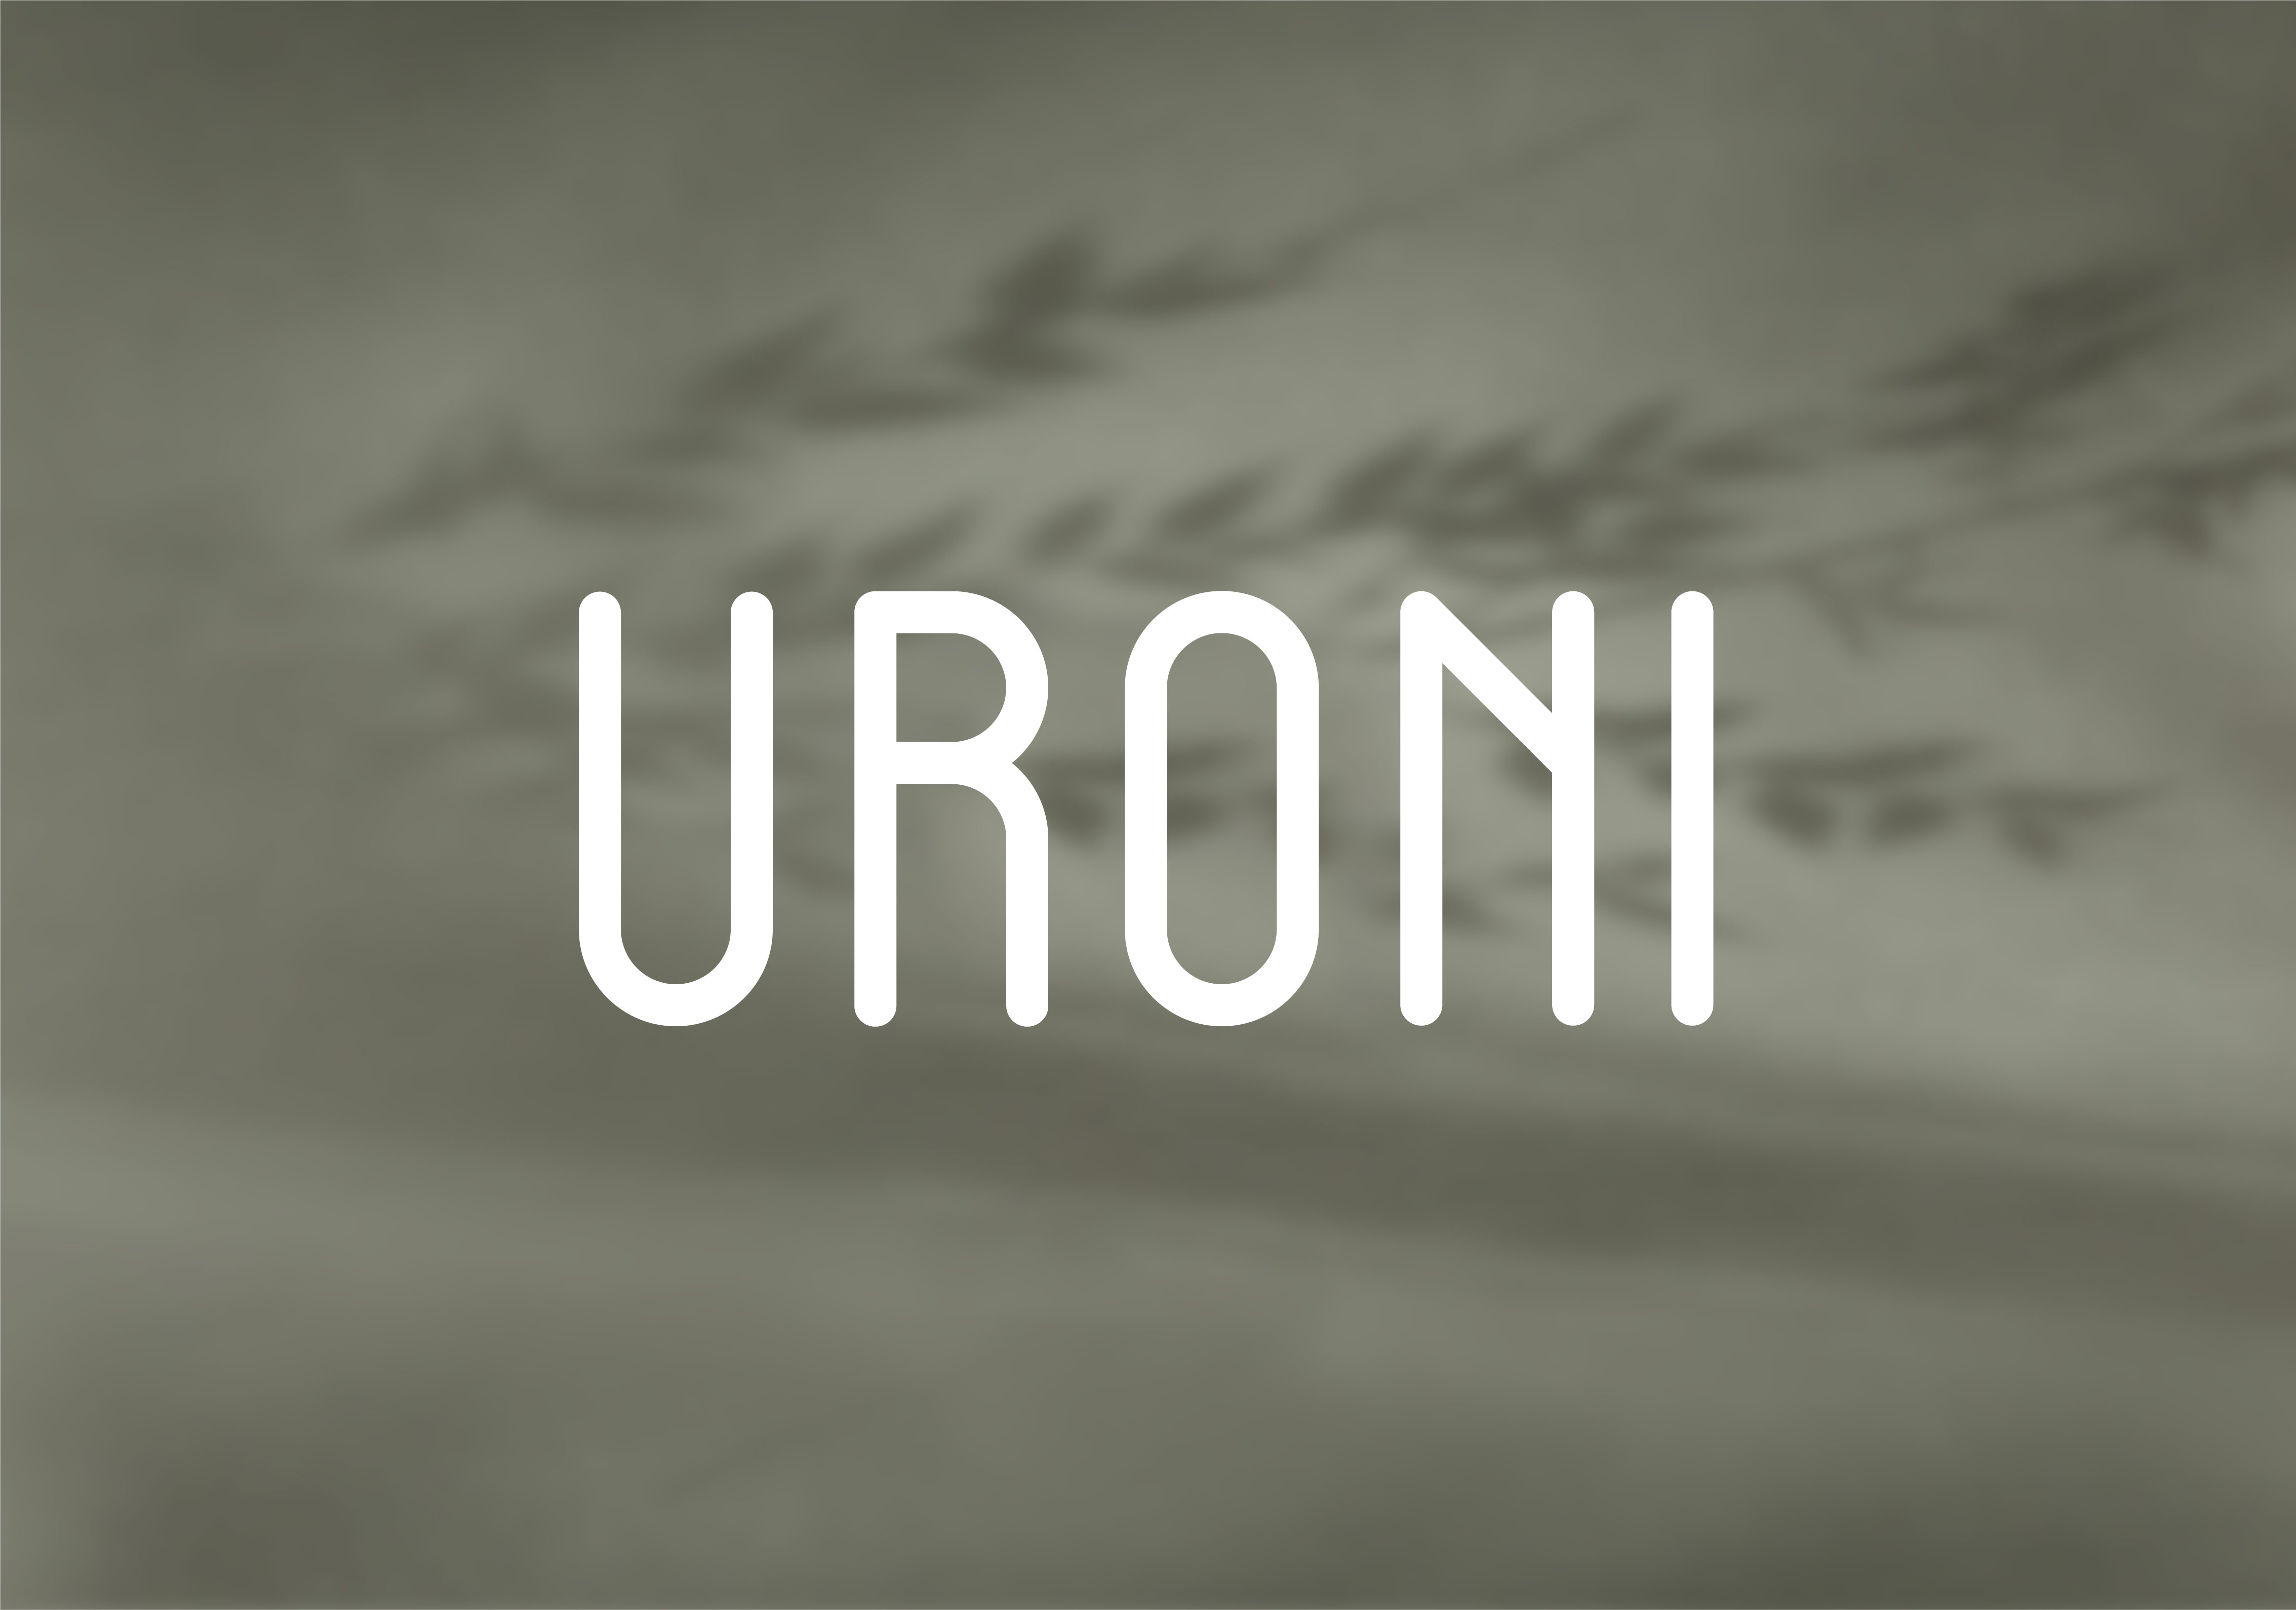 Uroni Case 01